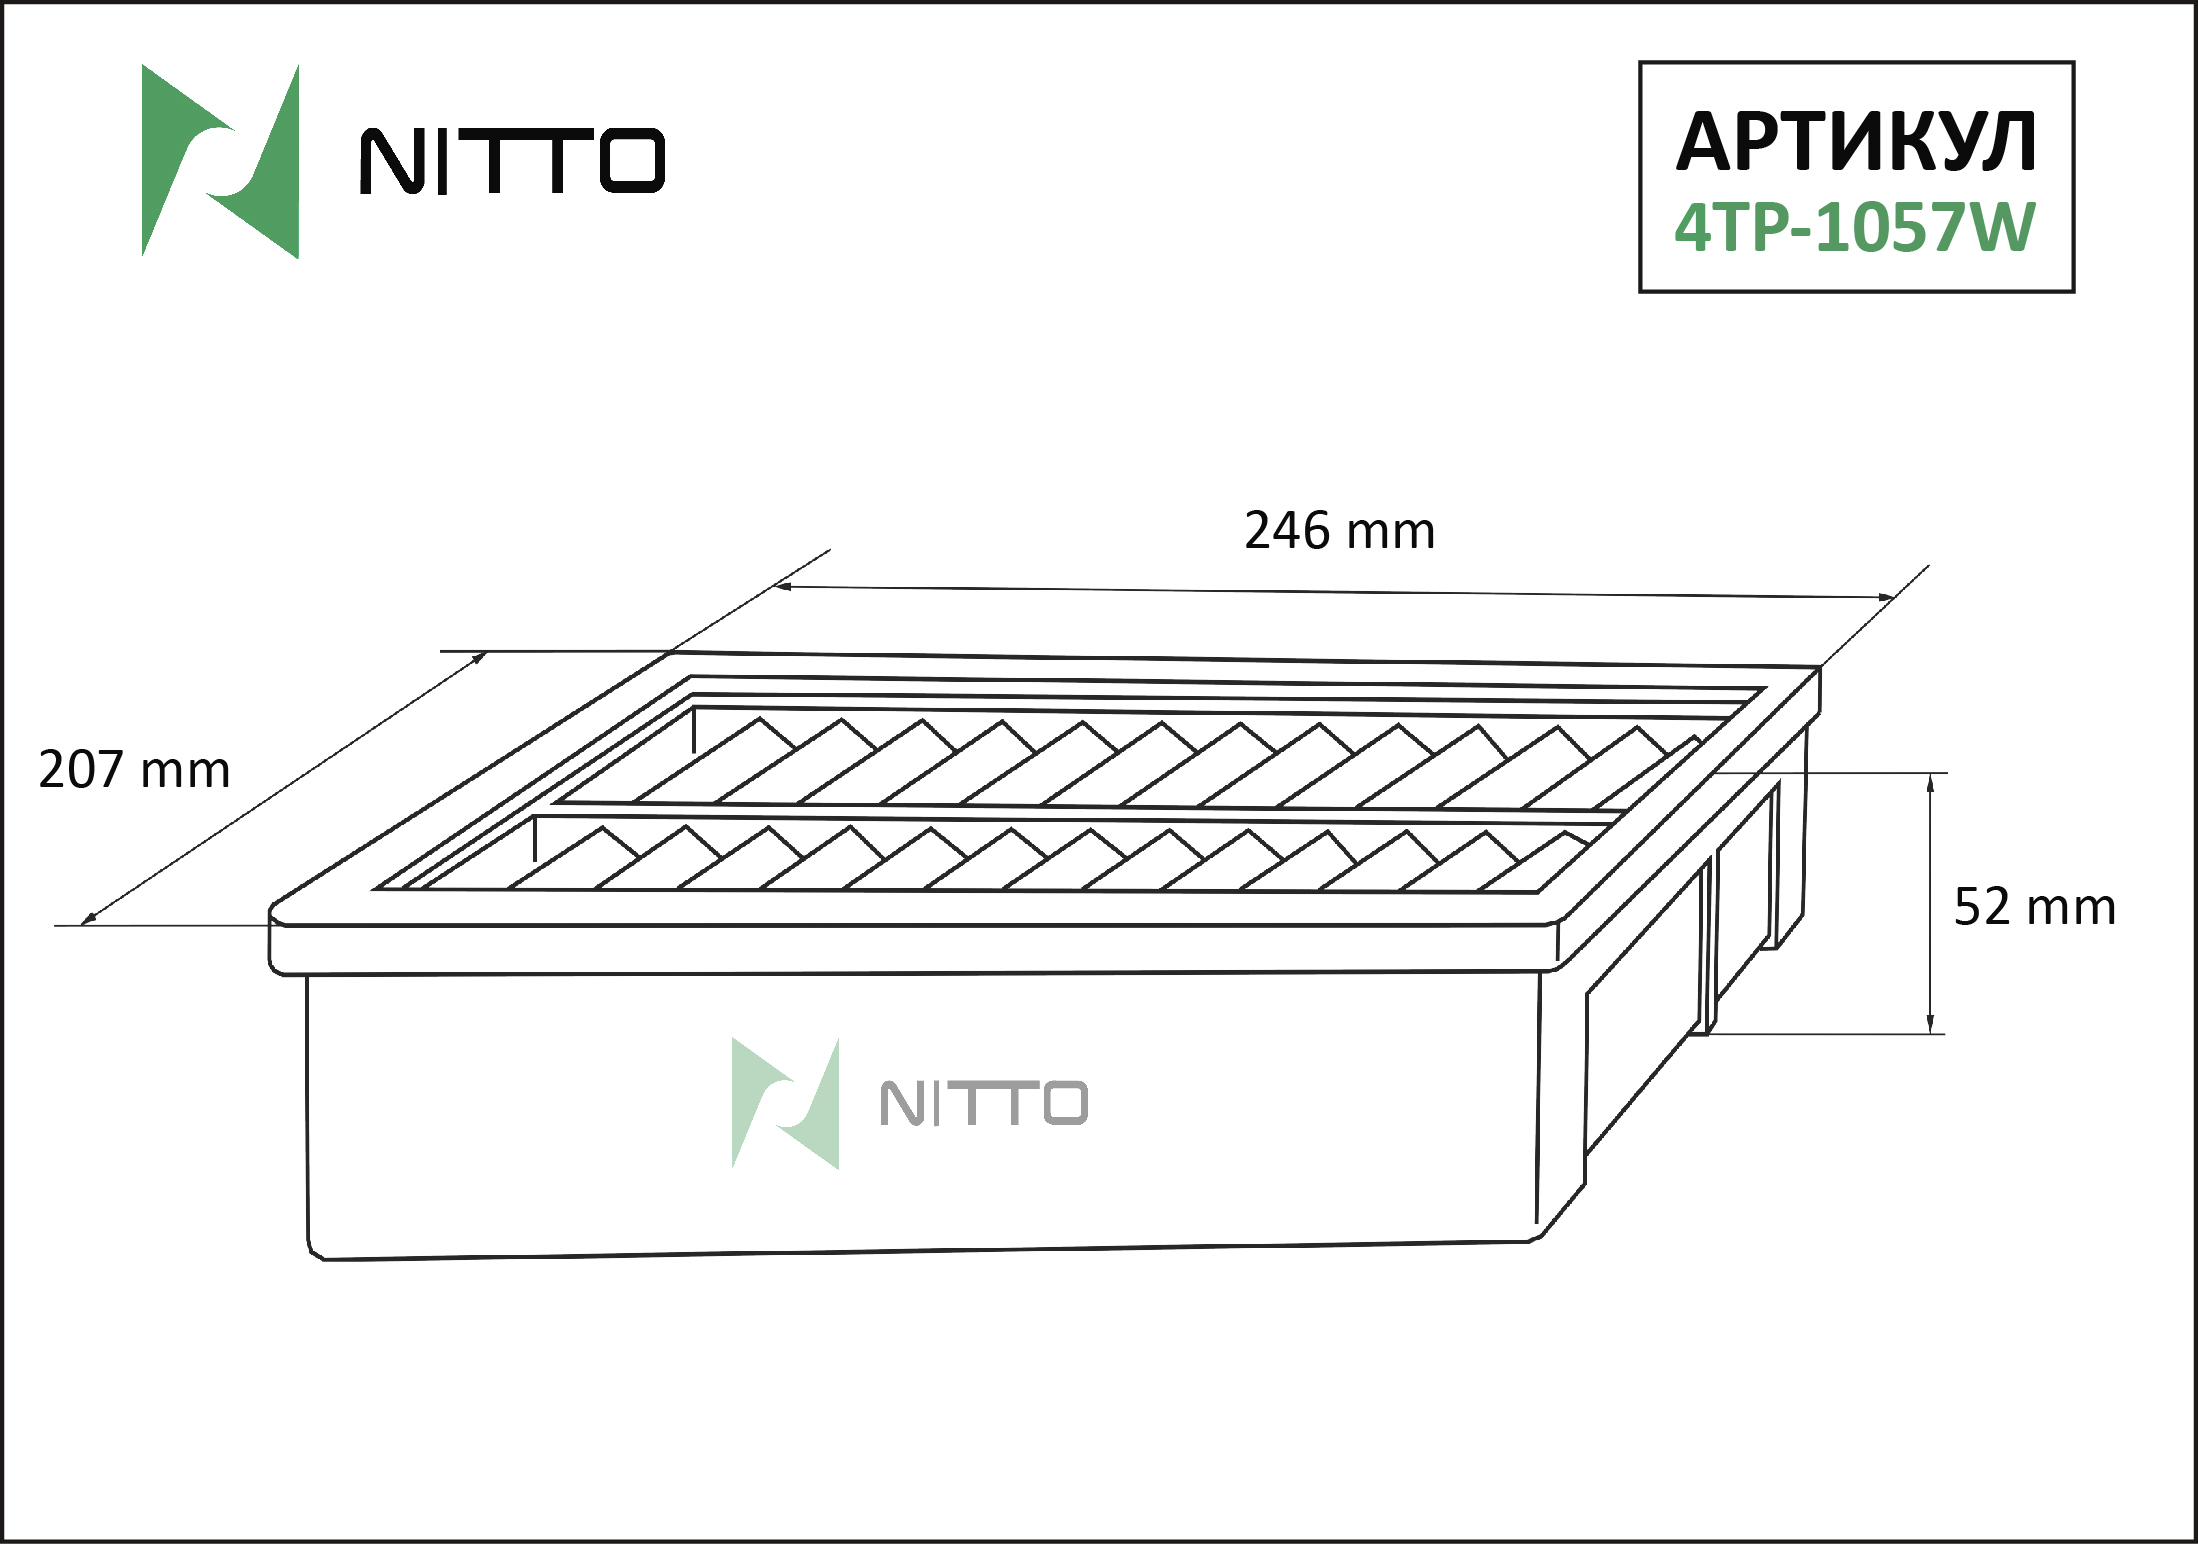 Фильтр воздушный - Nitto 4TP-1057W